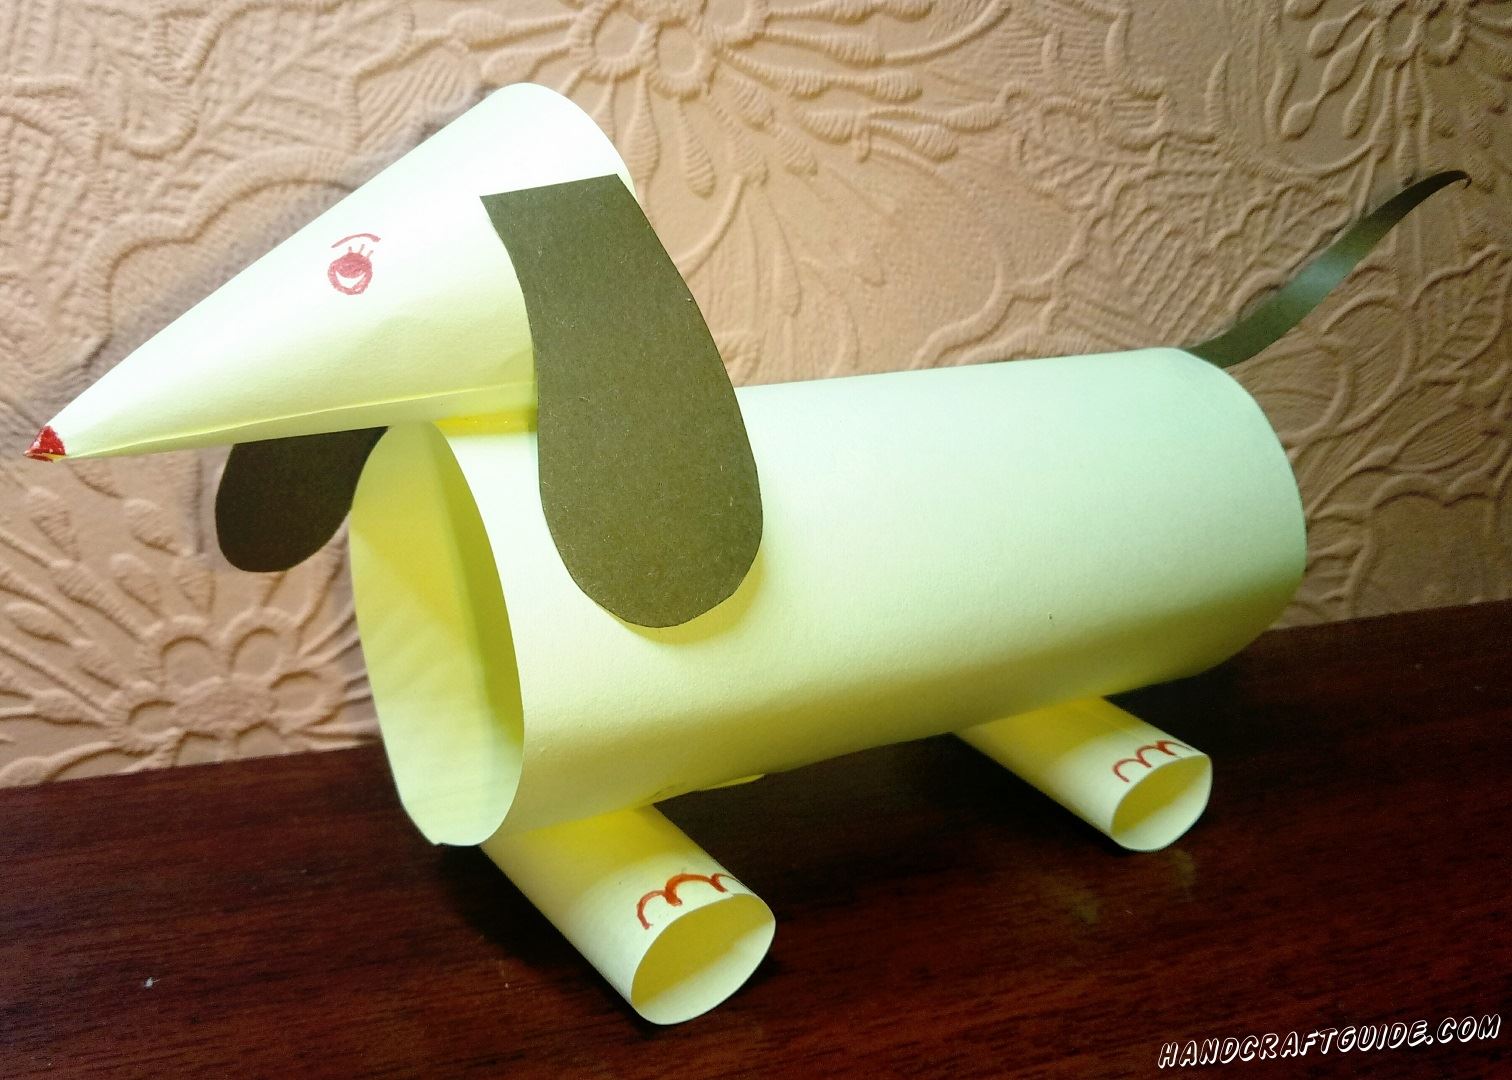 Собачка, выполненная из бумажных трубочек, станет вашим отличным другом и помощником.